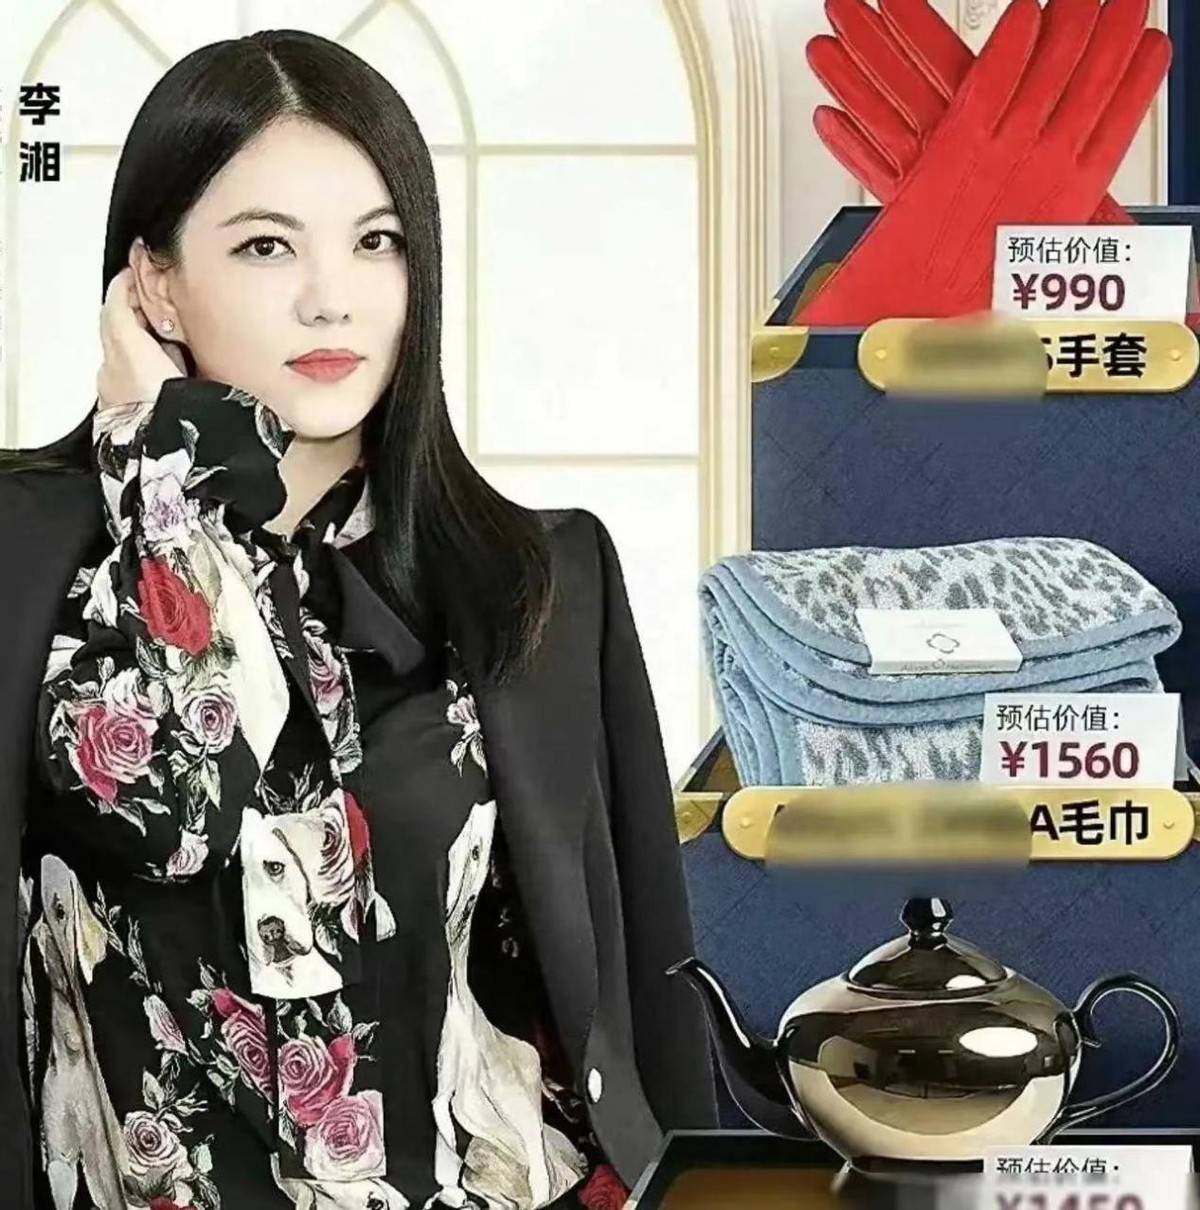 二手毛巾卖1560元冲上热搜，李湘辟谣，究竟是炫富还是真甩卖？